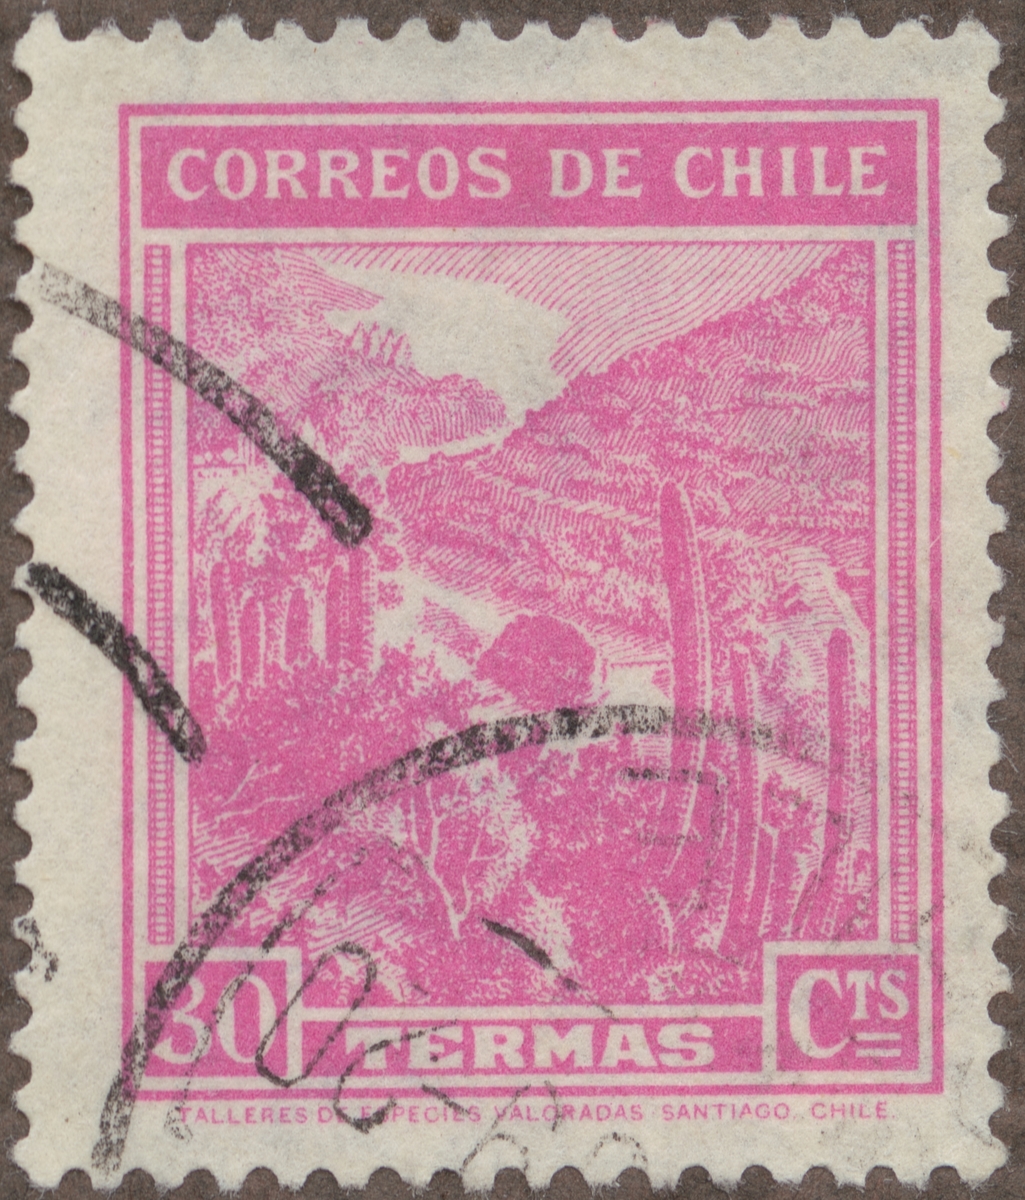 Frimärke ur Gösta Bodmans filatelistiska motivsamling, påbörjad 1950.
Frimärke från Chile, 1938. Motiv av varma hälsokällor.